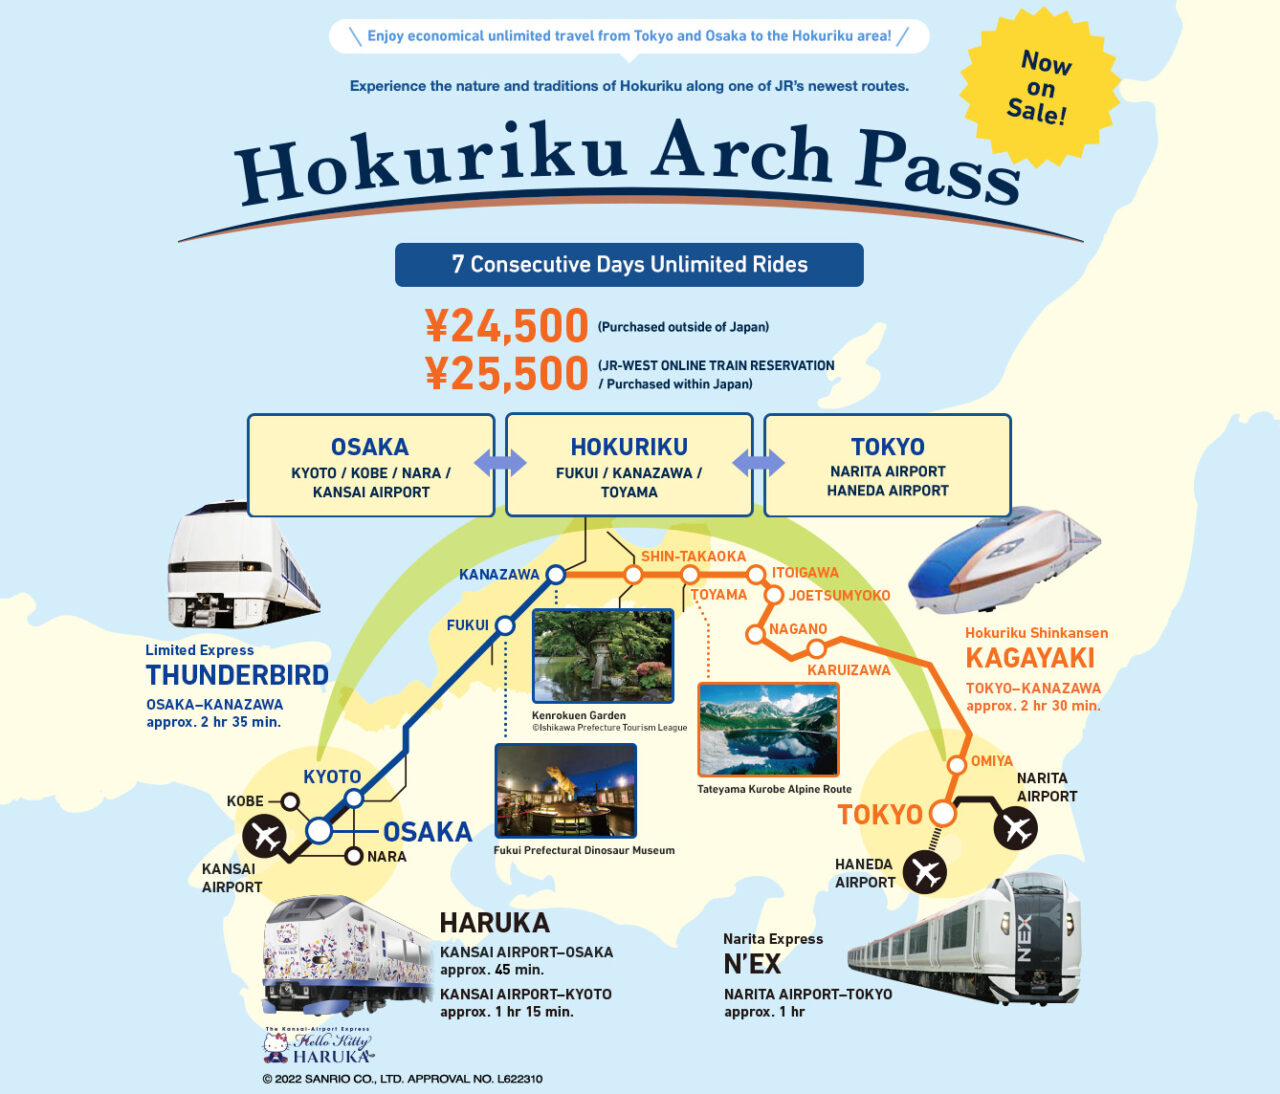 hokuriku arch pass image